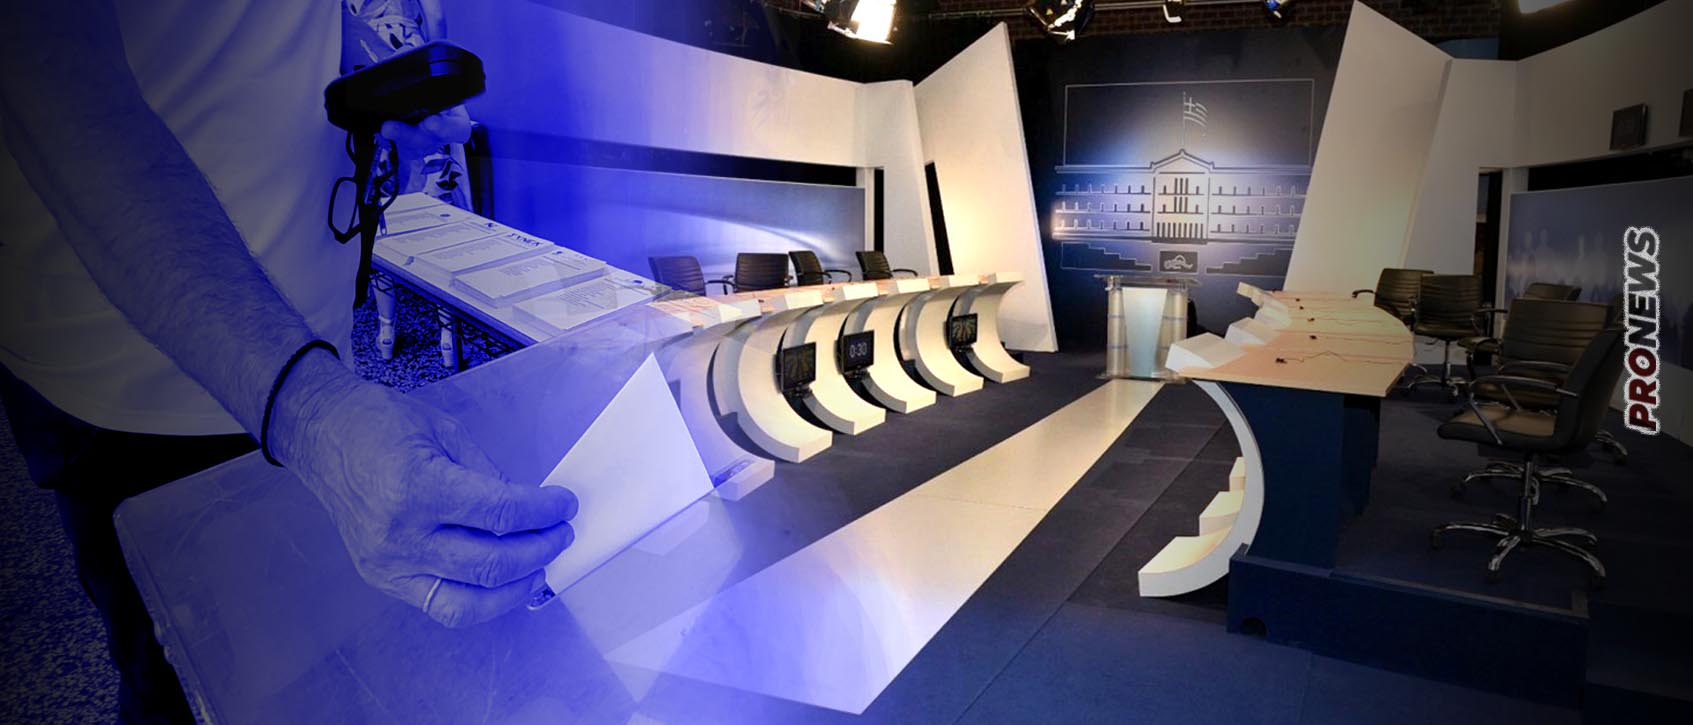 Απόψε στις 21:00 debate – Θα κάνει αποκαλύψεις ο Α.Τσίπρας;